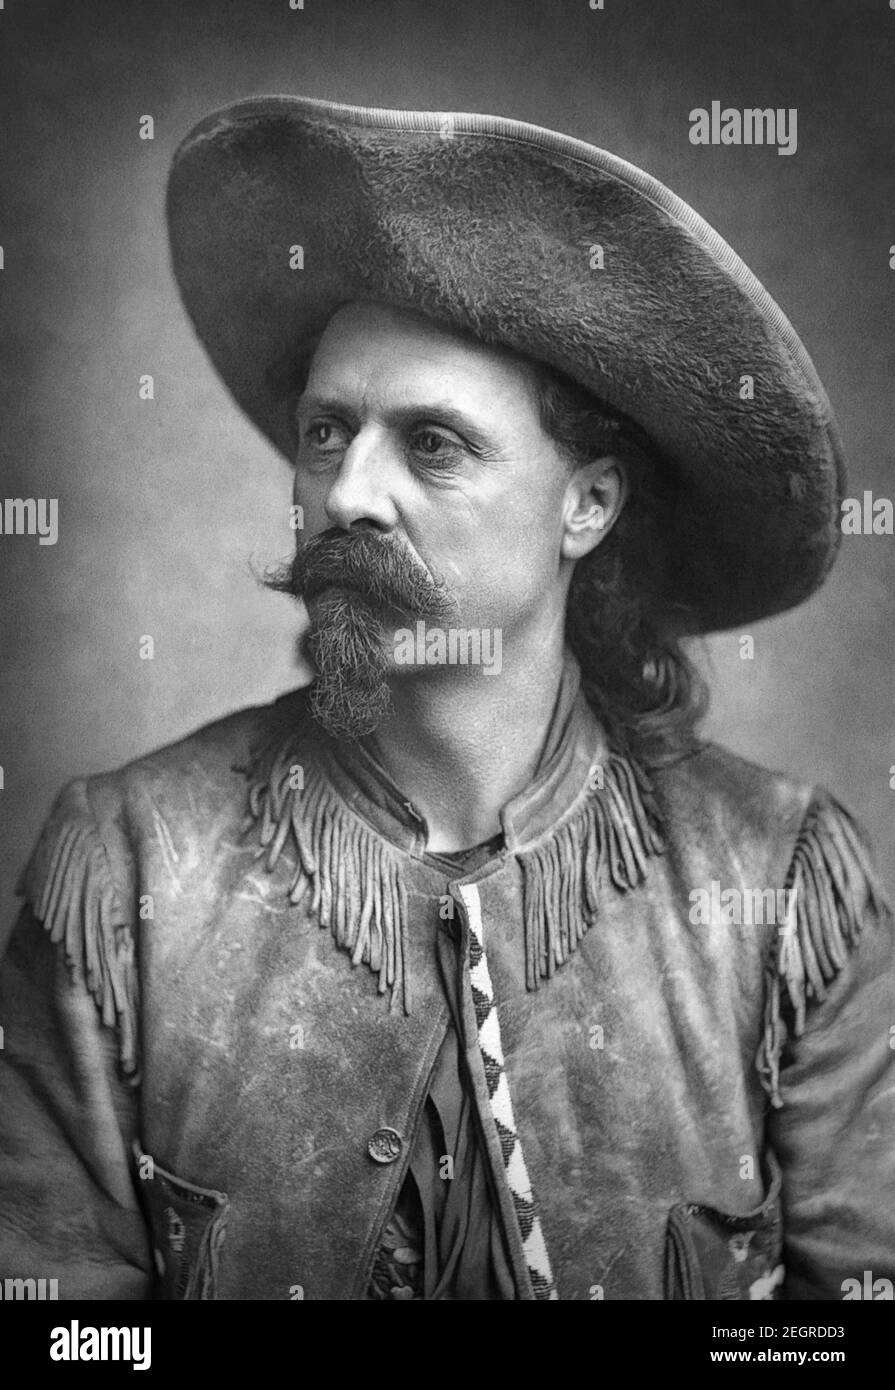 William Frederick 'Buffalo Bill' Cody (1846–1917), soldat américain, chasseur de bisons et showman, plus connu pour le spectacle de Buffalo Bill's Wild West, dans un portrait photo de 1887. Banque D'Images